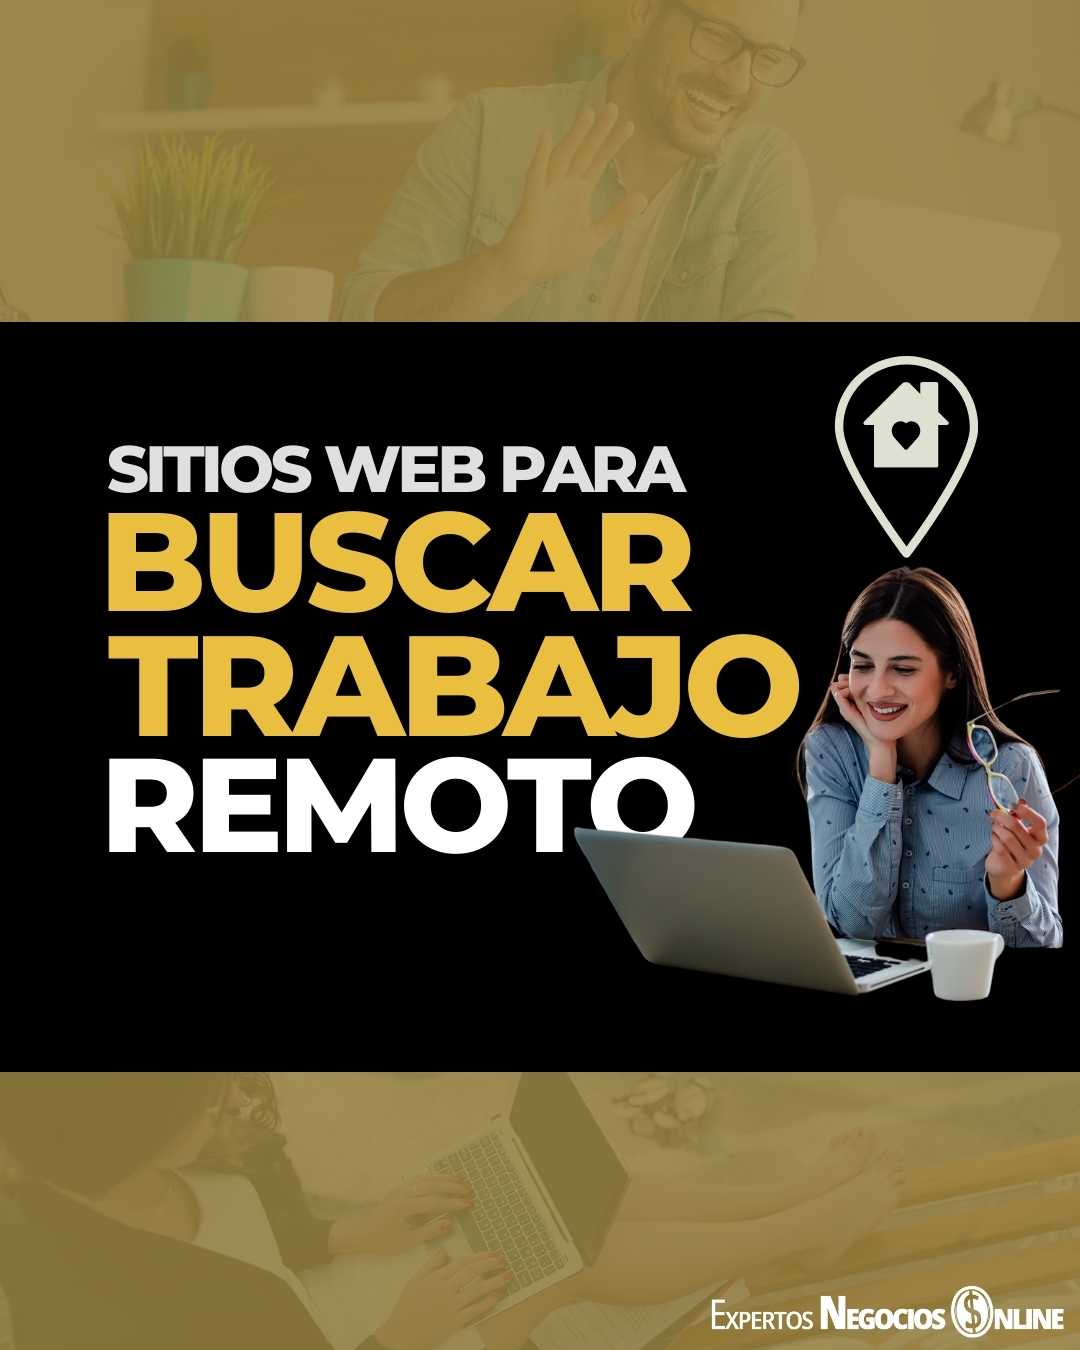 Sitios Web para buscar empleo por Internet (remoto)